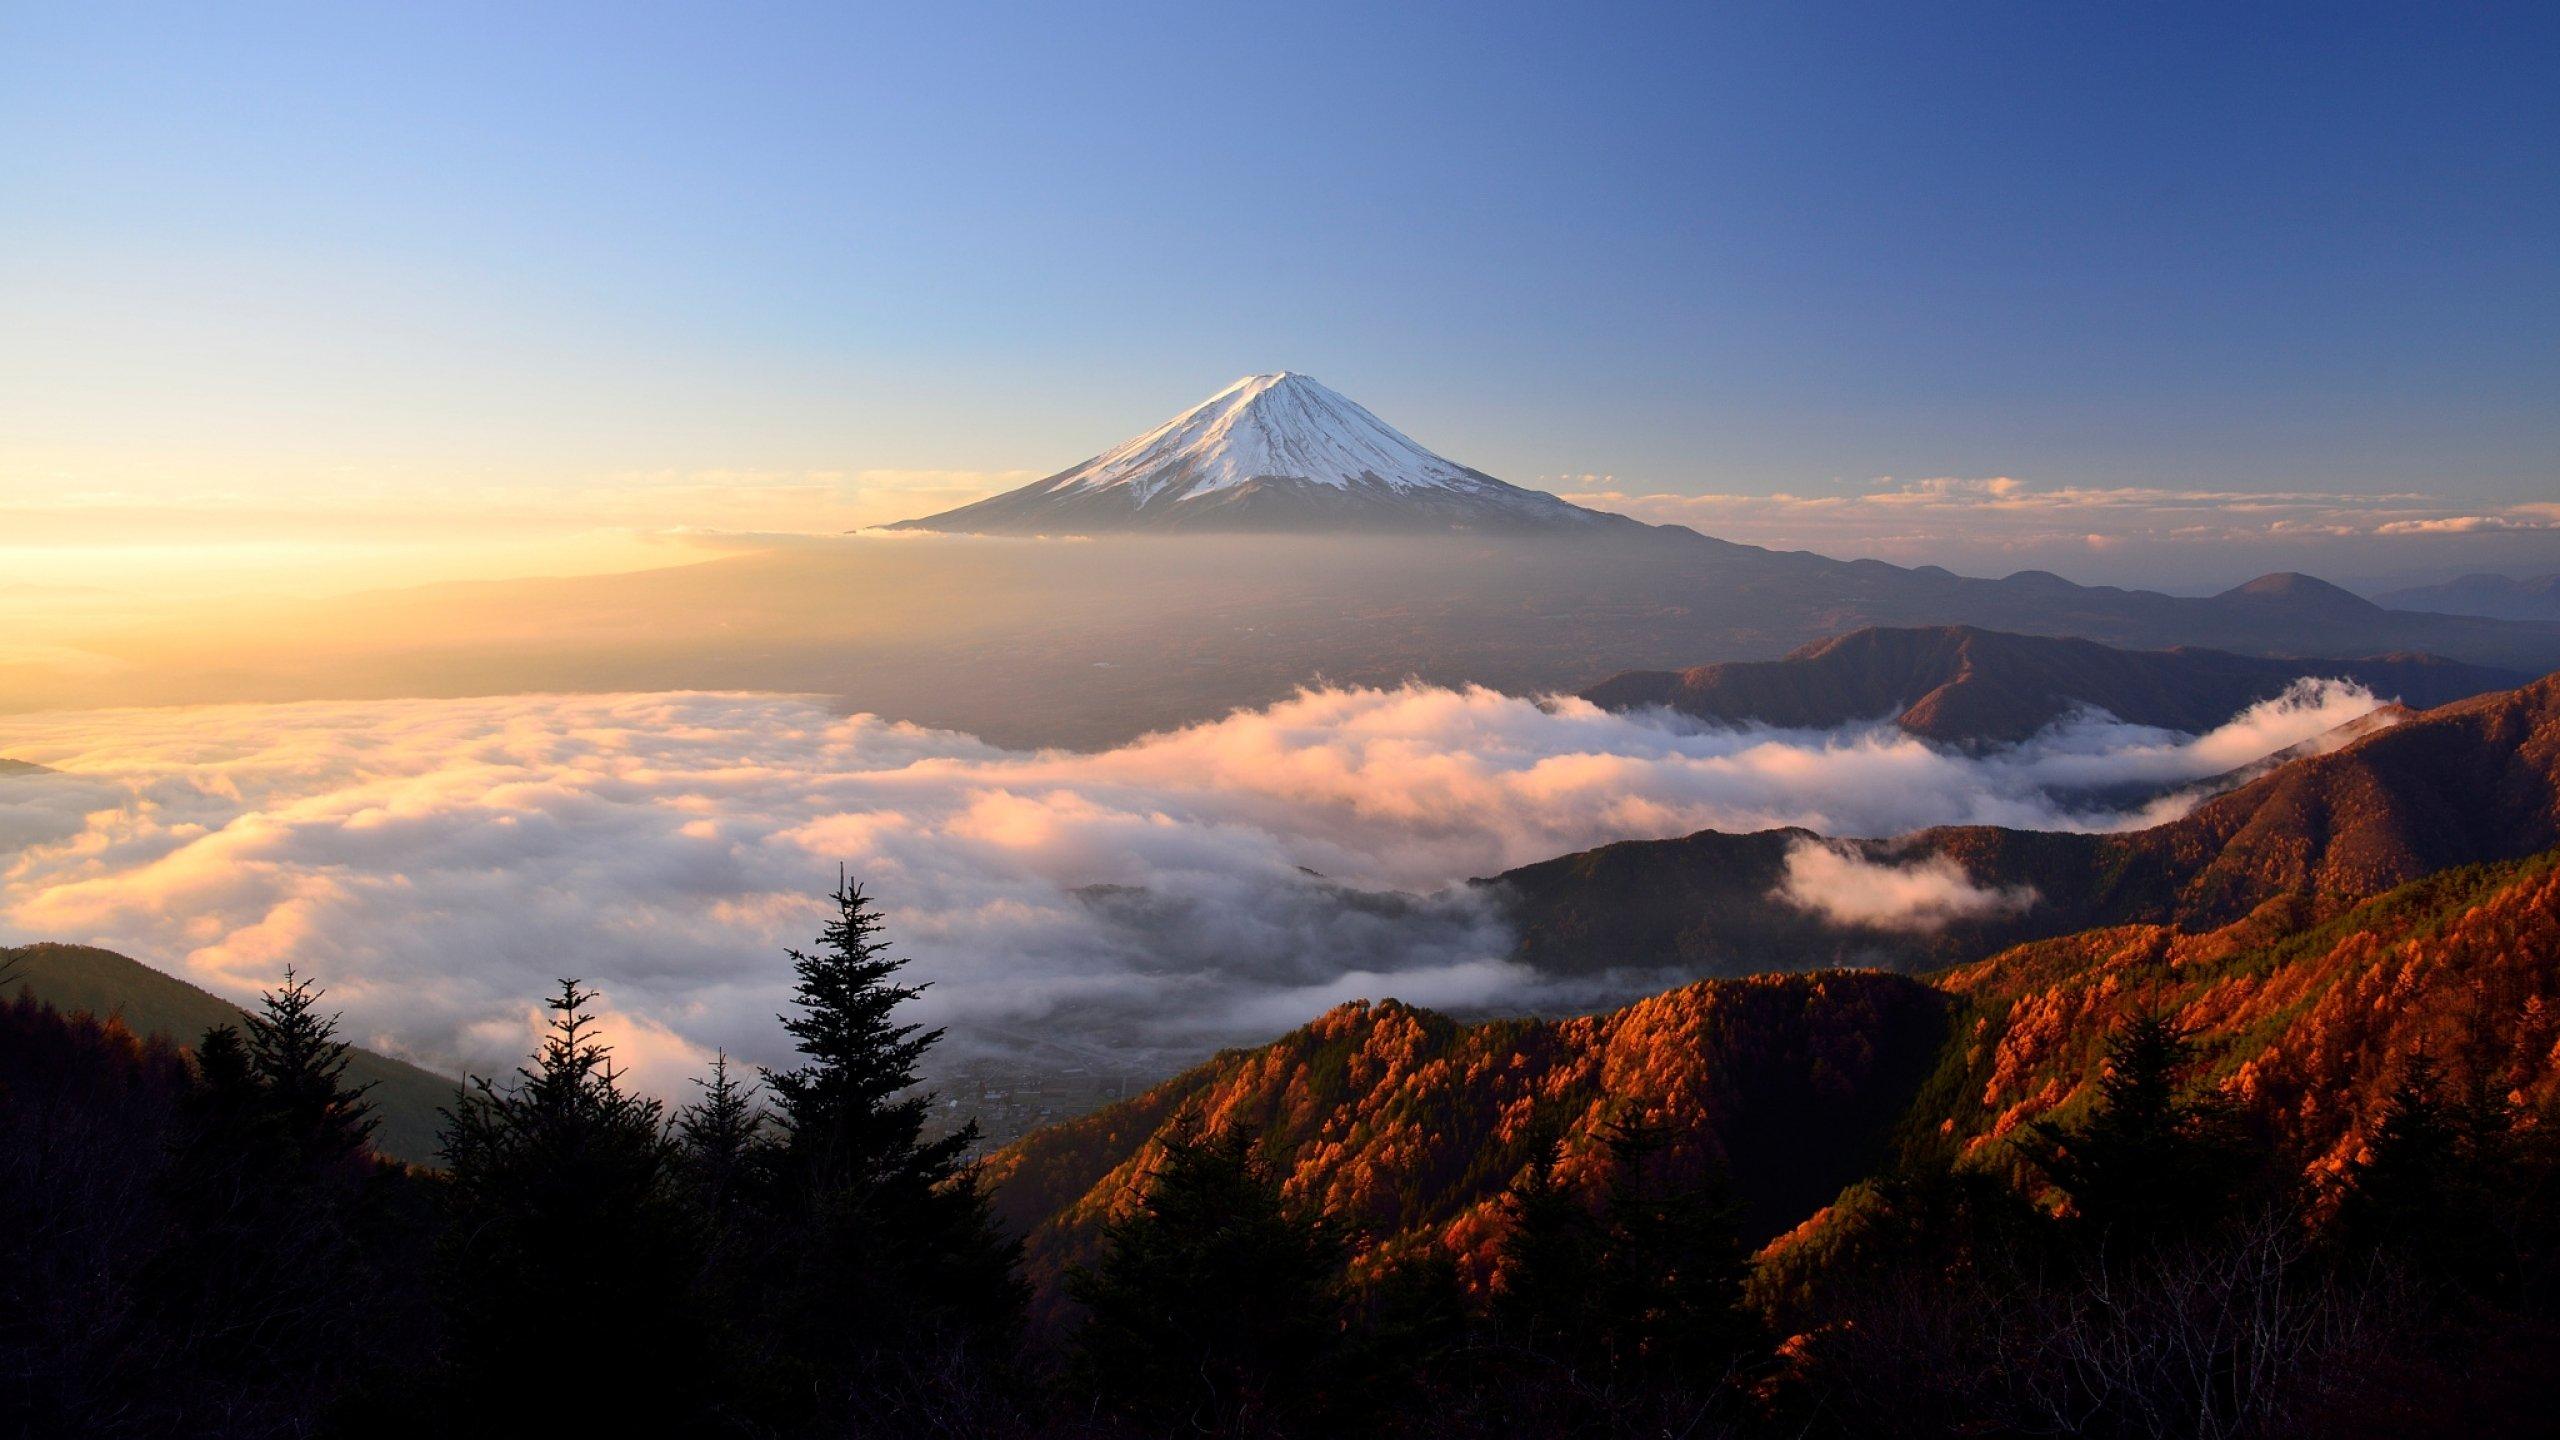 Mount Fuji [2560x1440]